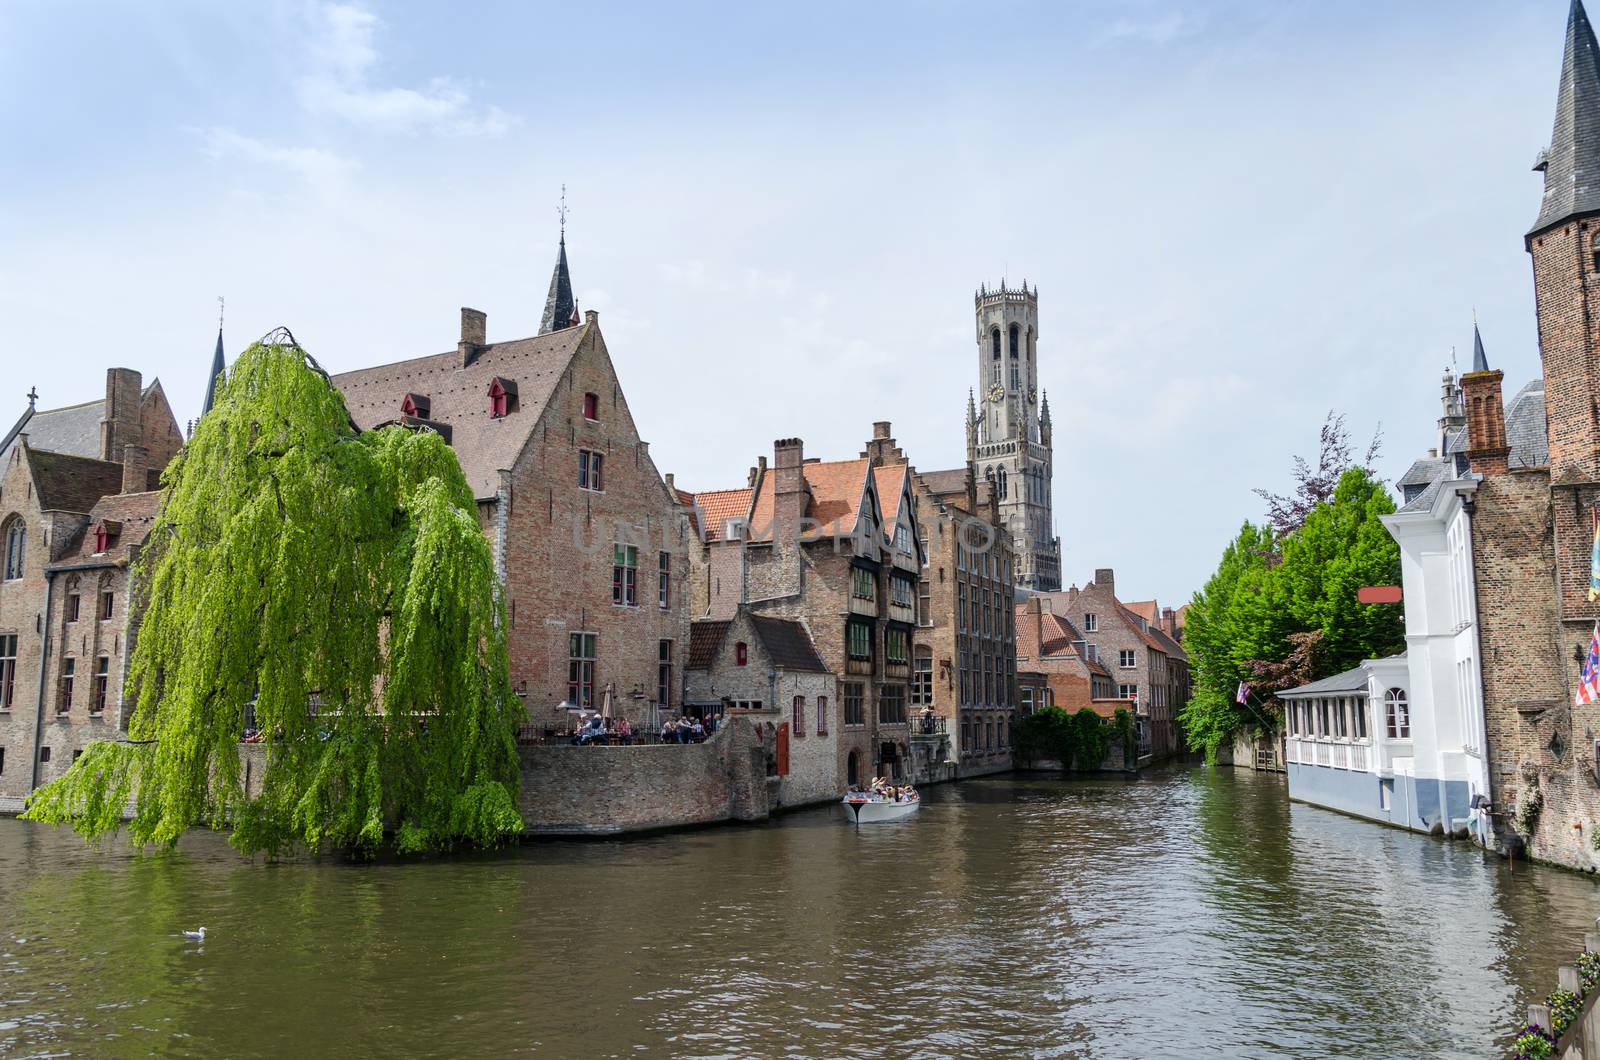 View from the Rozenhoedkaai in Bruges, Belgium